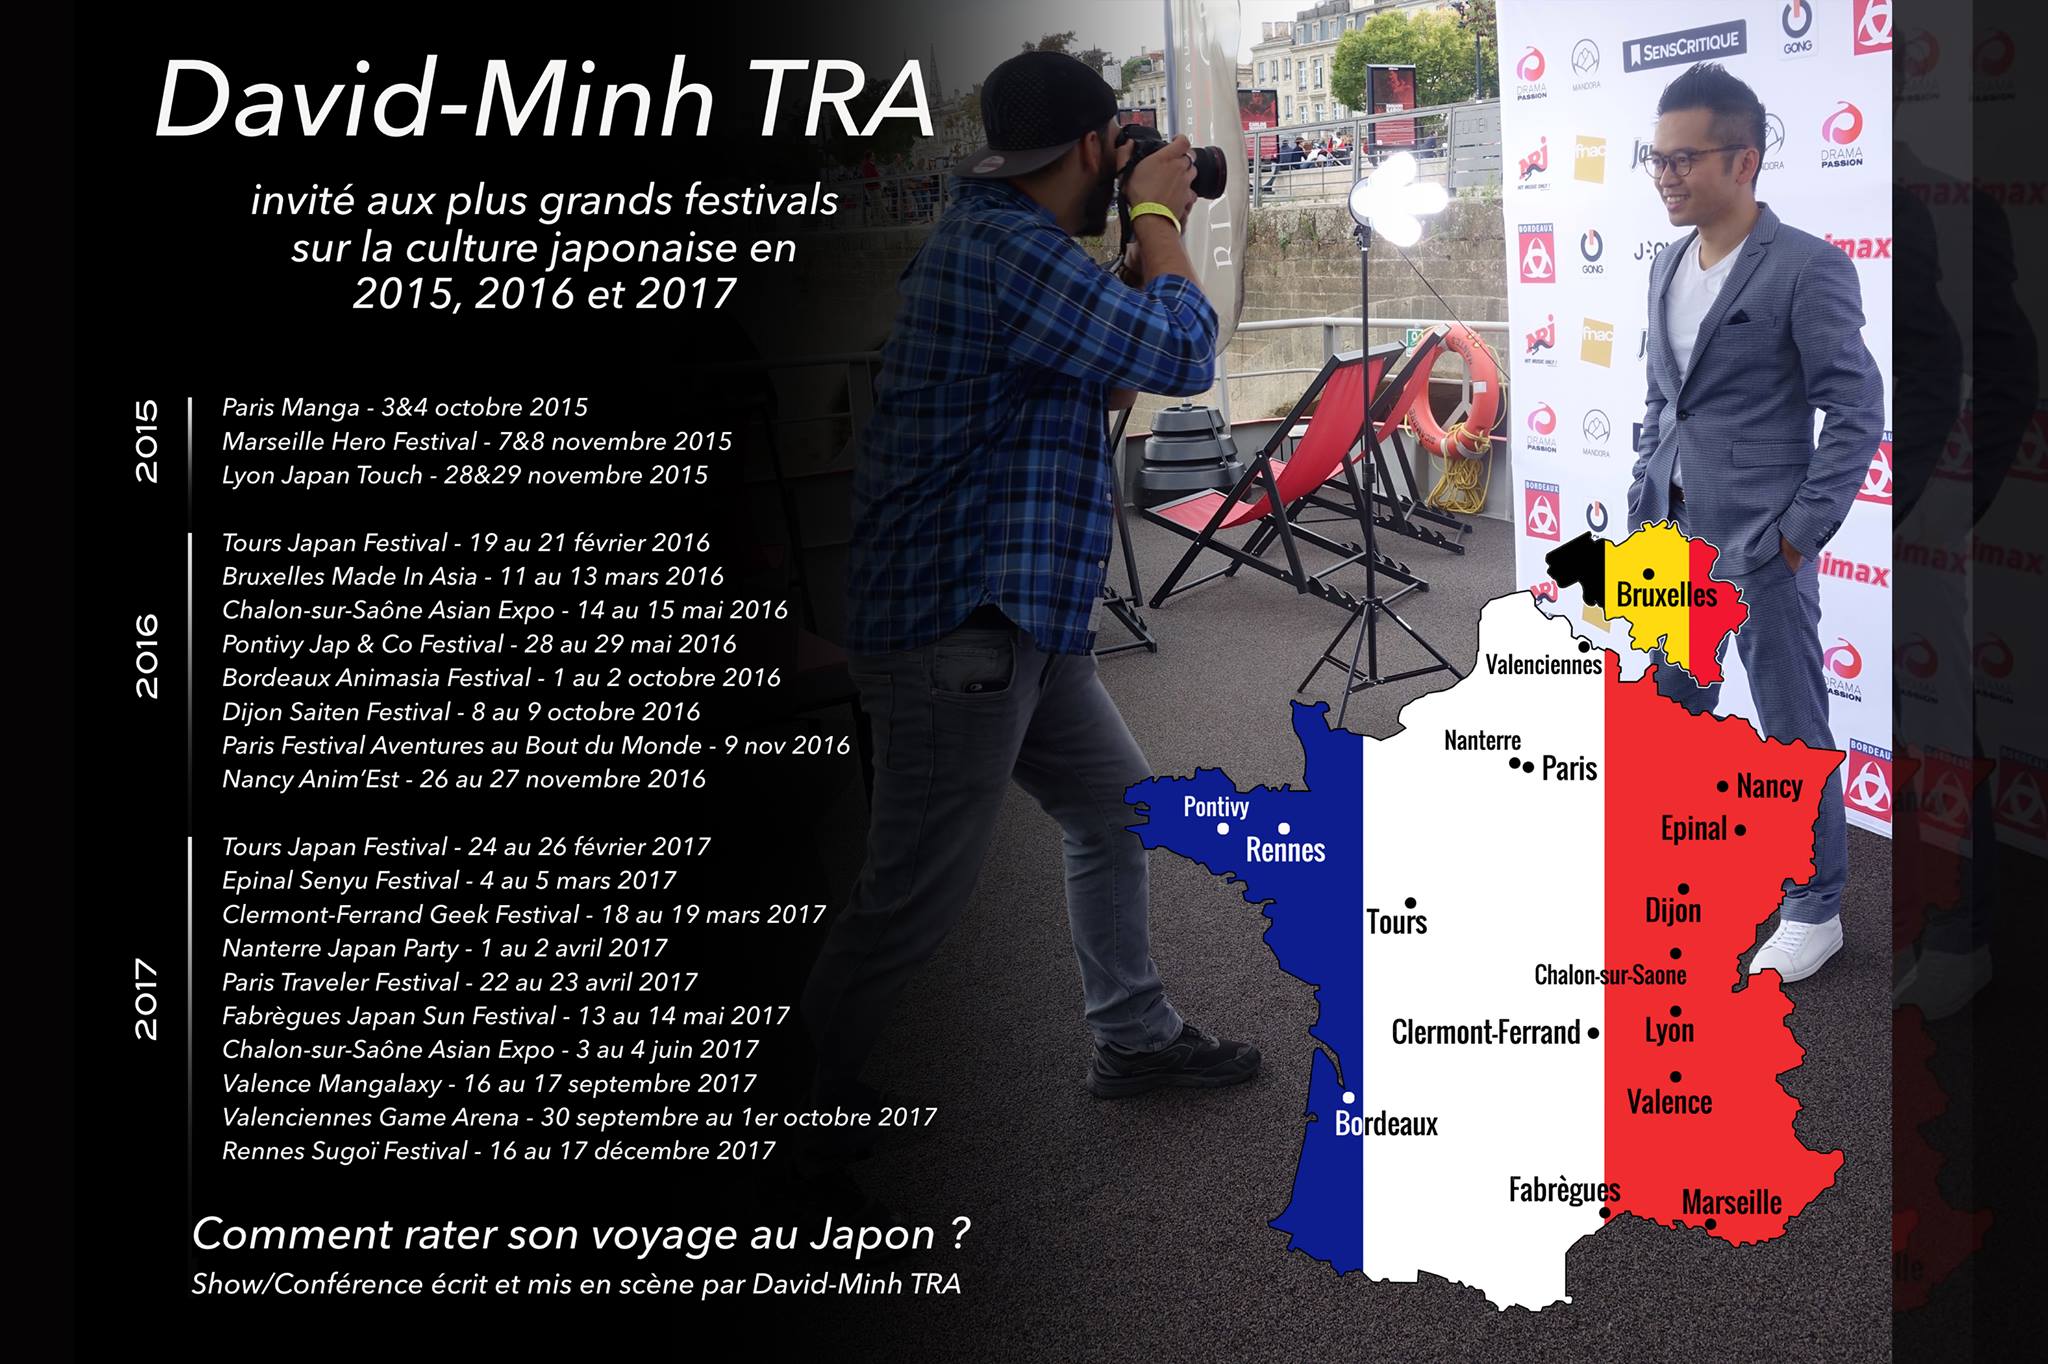 David-Minh TRA invité dans les plus grands festivals Japon, en France et Belgique